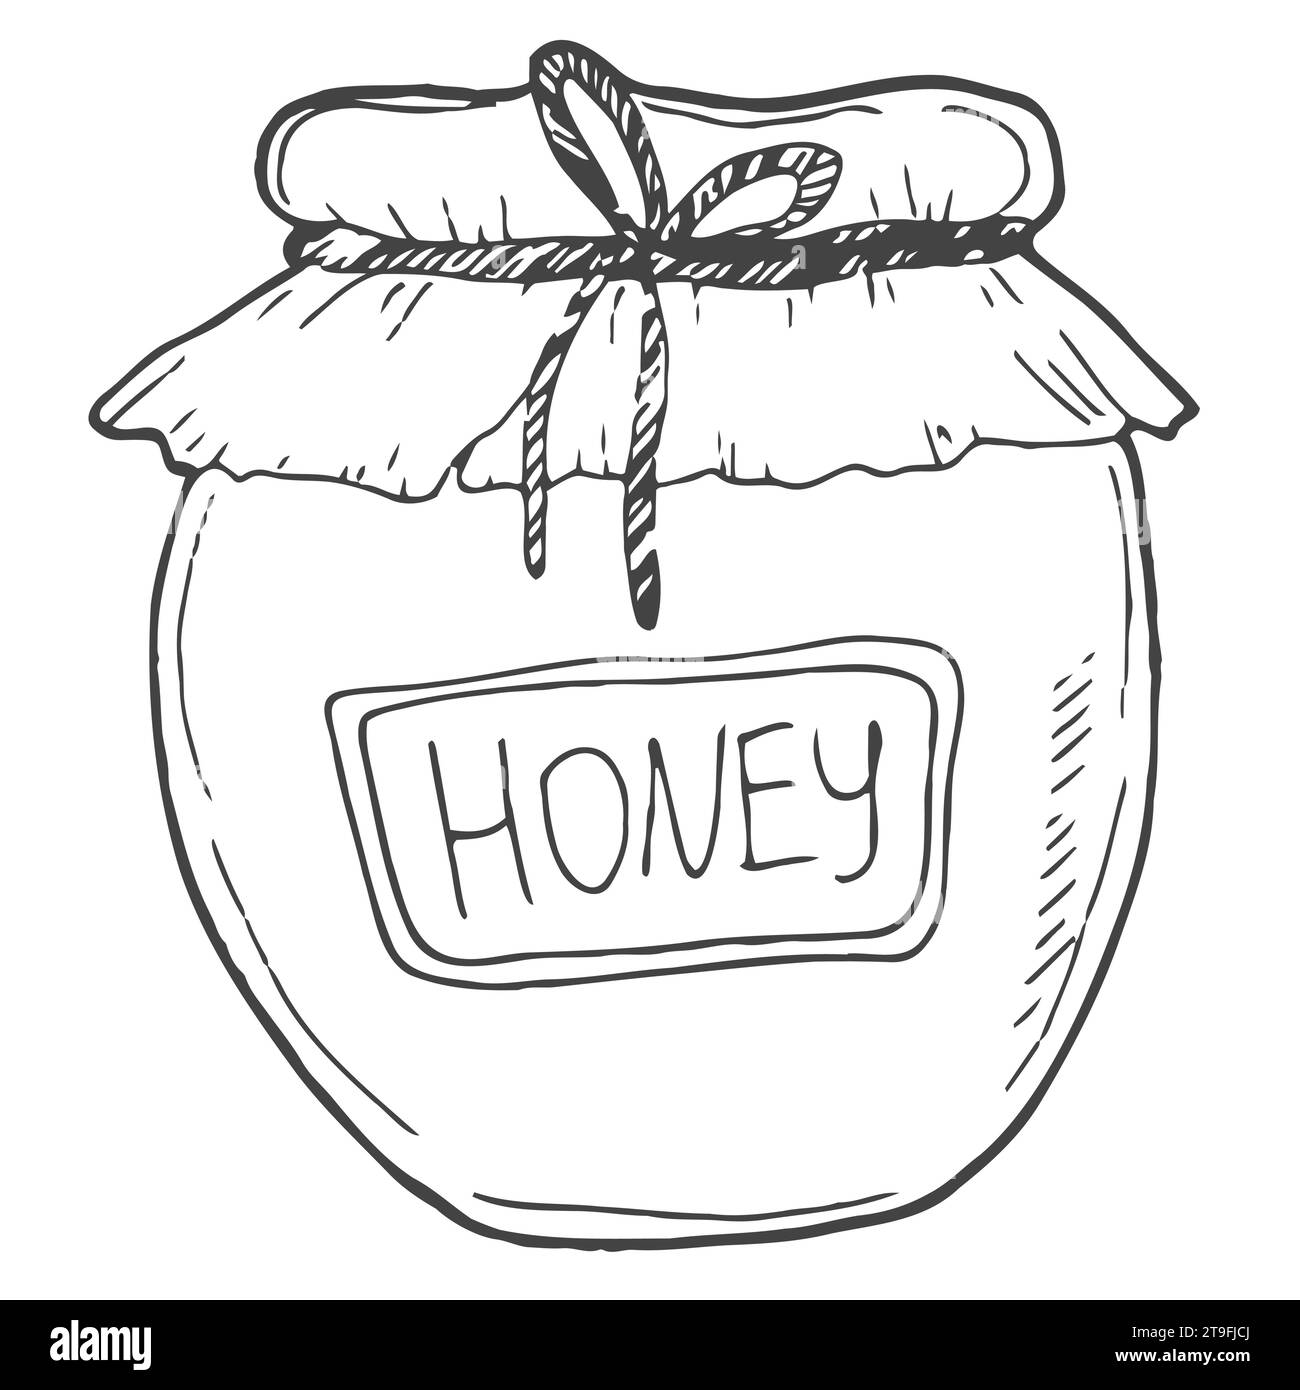 Honigglas, Vintage-Set mit Wabenmuster. Handgezeichnete Zeichnung mit gravierten Bio-Lebensmitteln. Stock Vektor